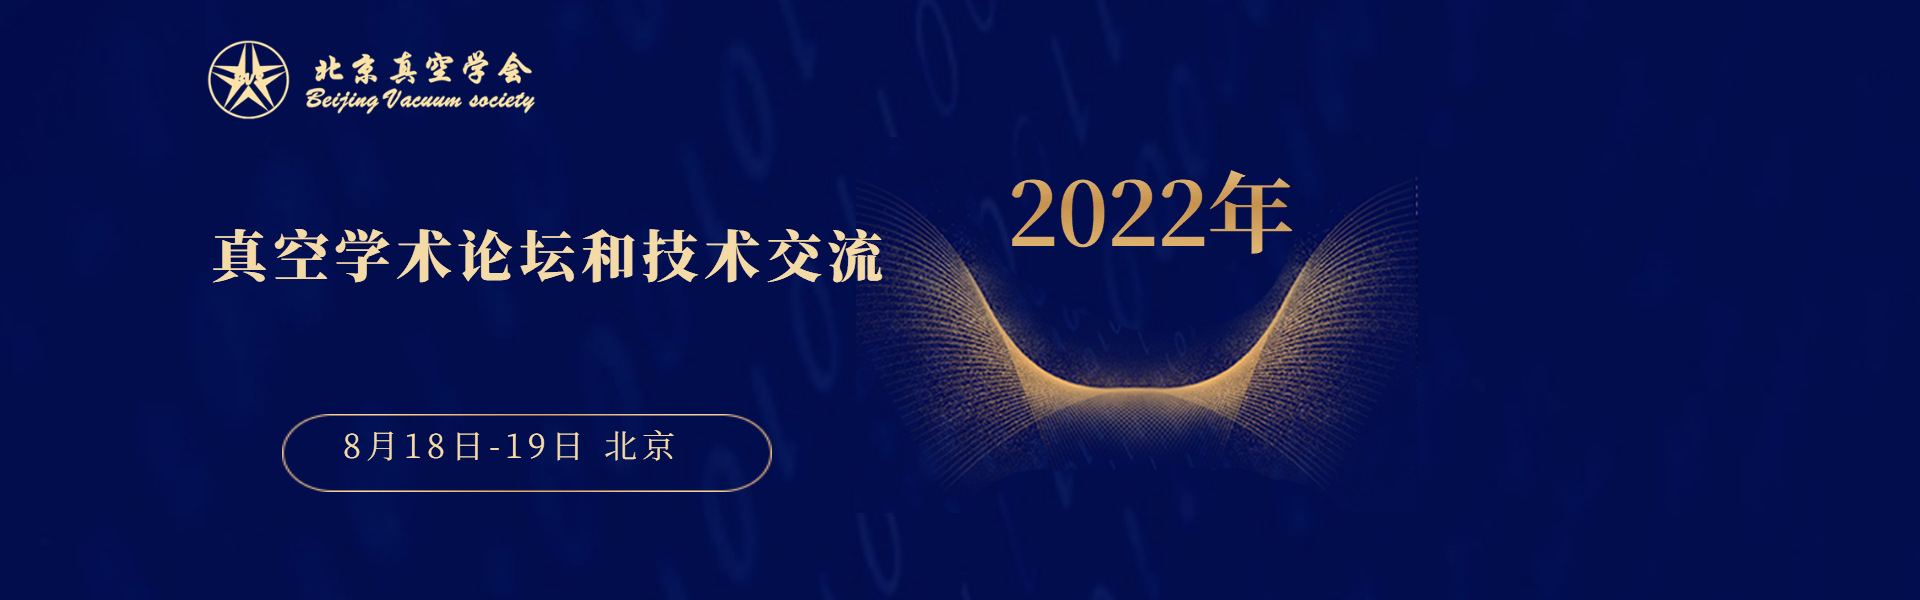 2022年北京真空学会学术论坛和技术交流